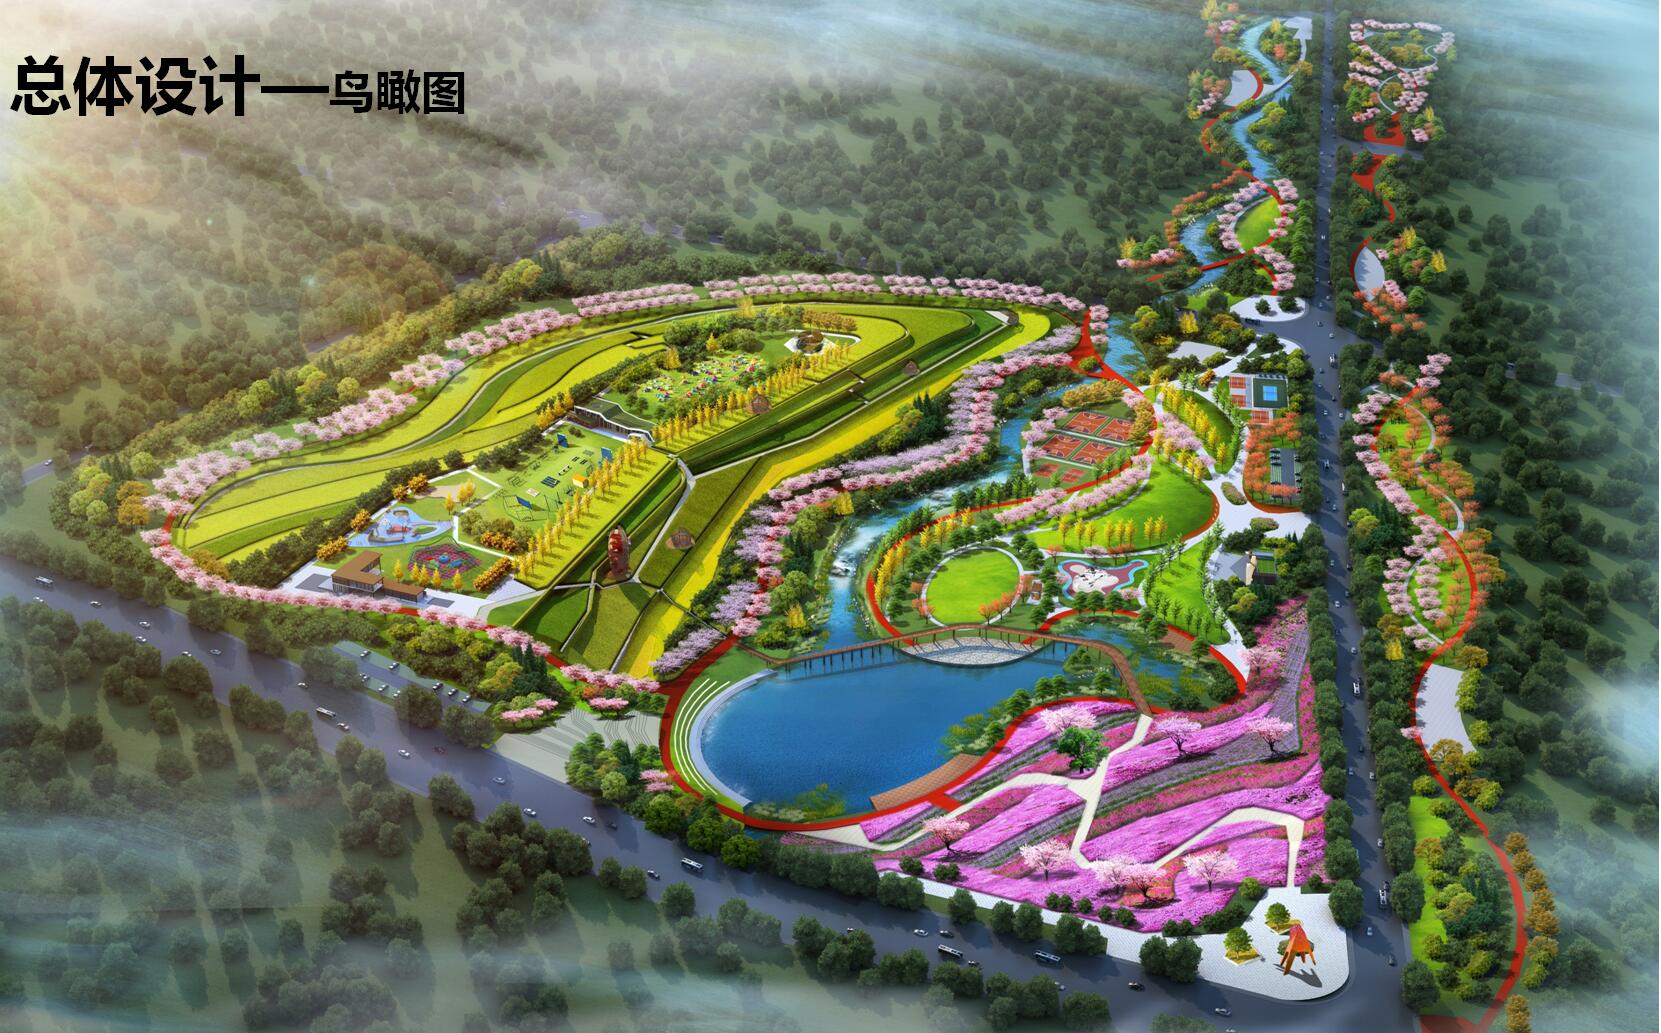 荣成市绿景园林有限责任公司副总经理吕文革说"十里河绿轴工程自去年